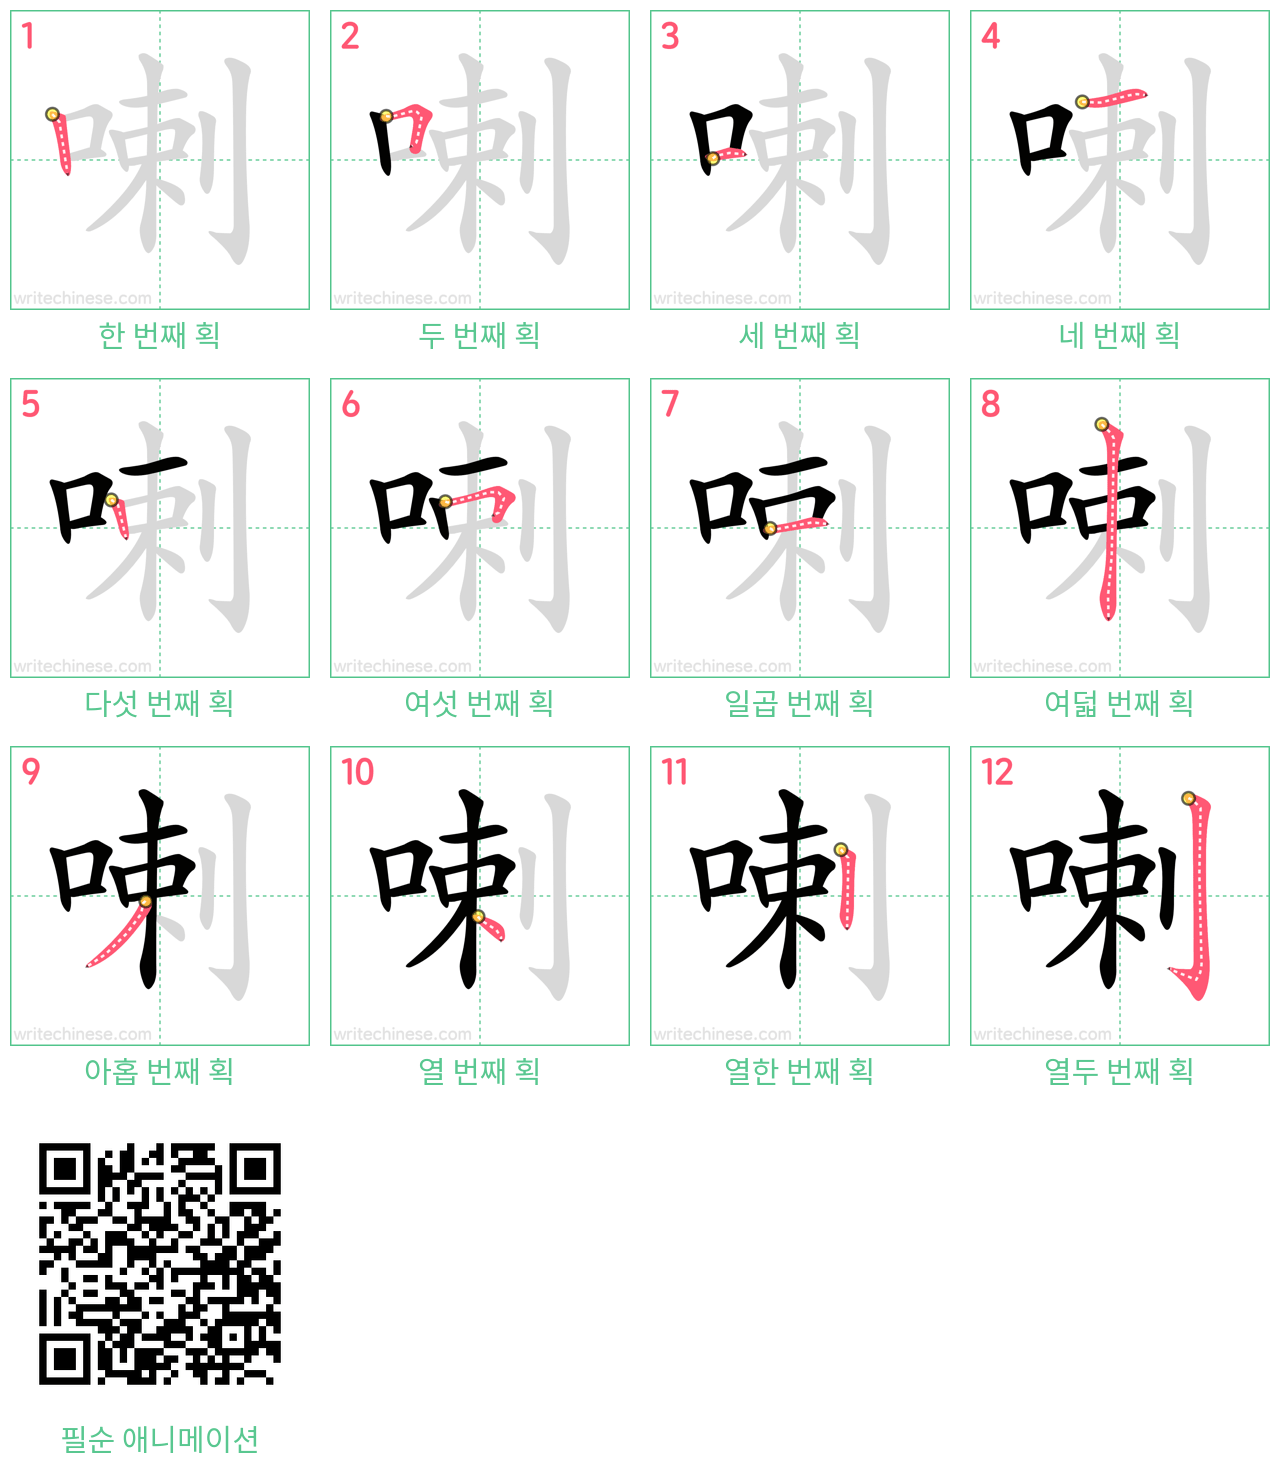 喇 step-by-step stroke order diagrams